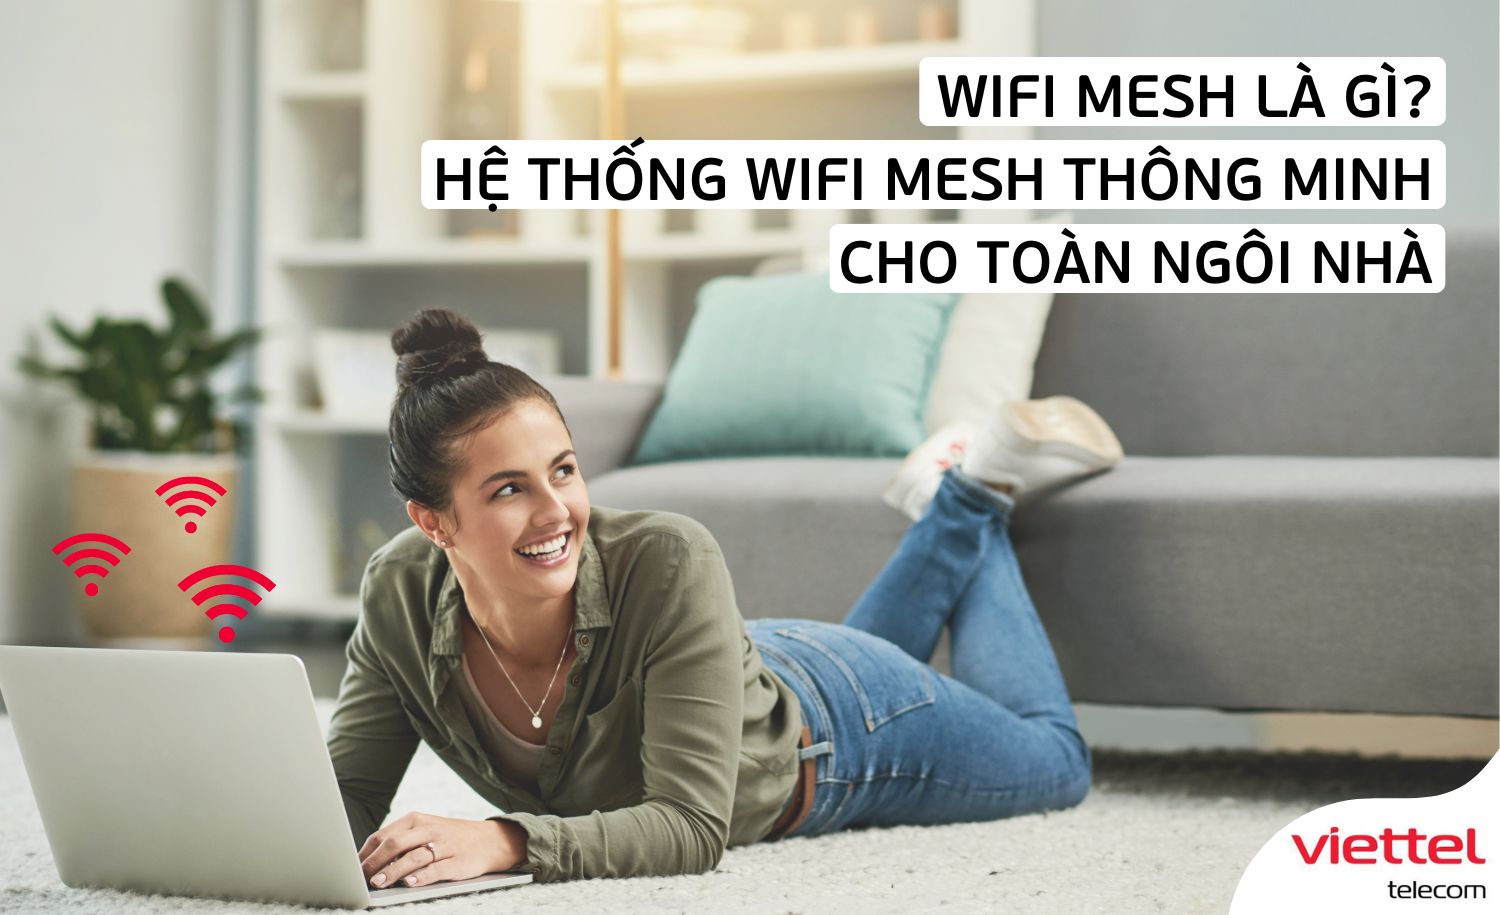 Wifi Mesh thông minh của Viettel được nâng cấp lên một tầm cao mới. Không chỉ phủ rộng nhà cửa, wifi Mesh thông minh còn đem đến tốc độ kết nối ấn tượng, ổn định và đa dạng tính năng giúp quản lý kết nối một cách dễ dàng. Xem hình ảnh để trải nghiệm khả năng của wifi Mesh thông minh.